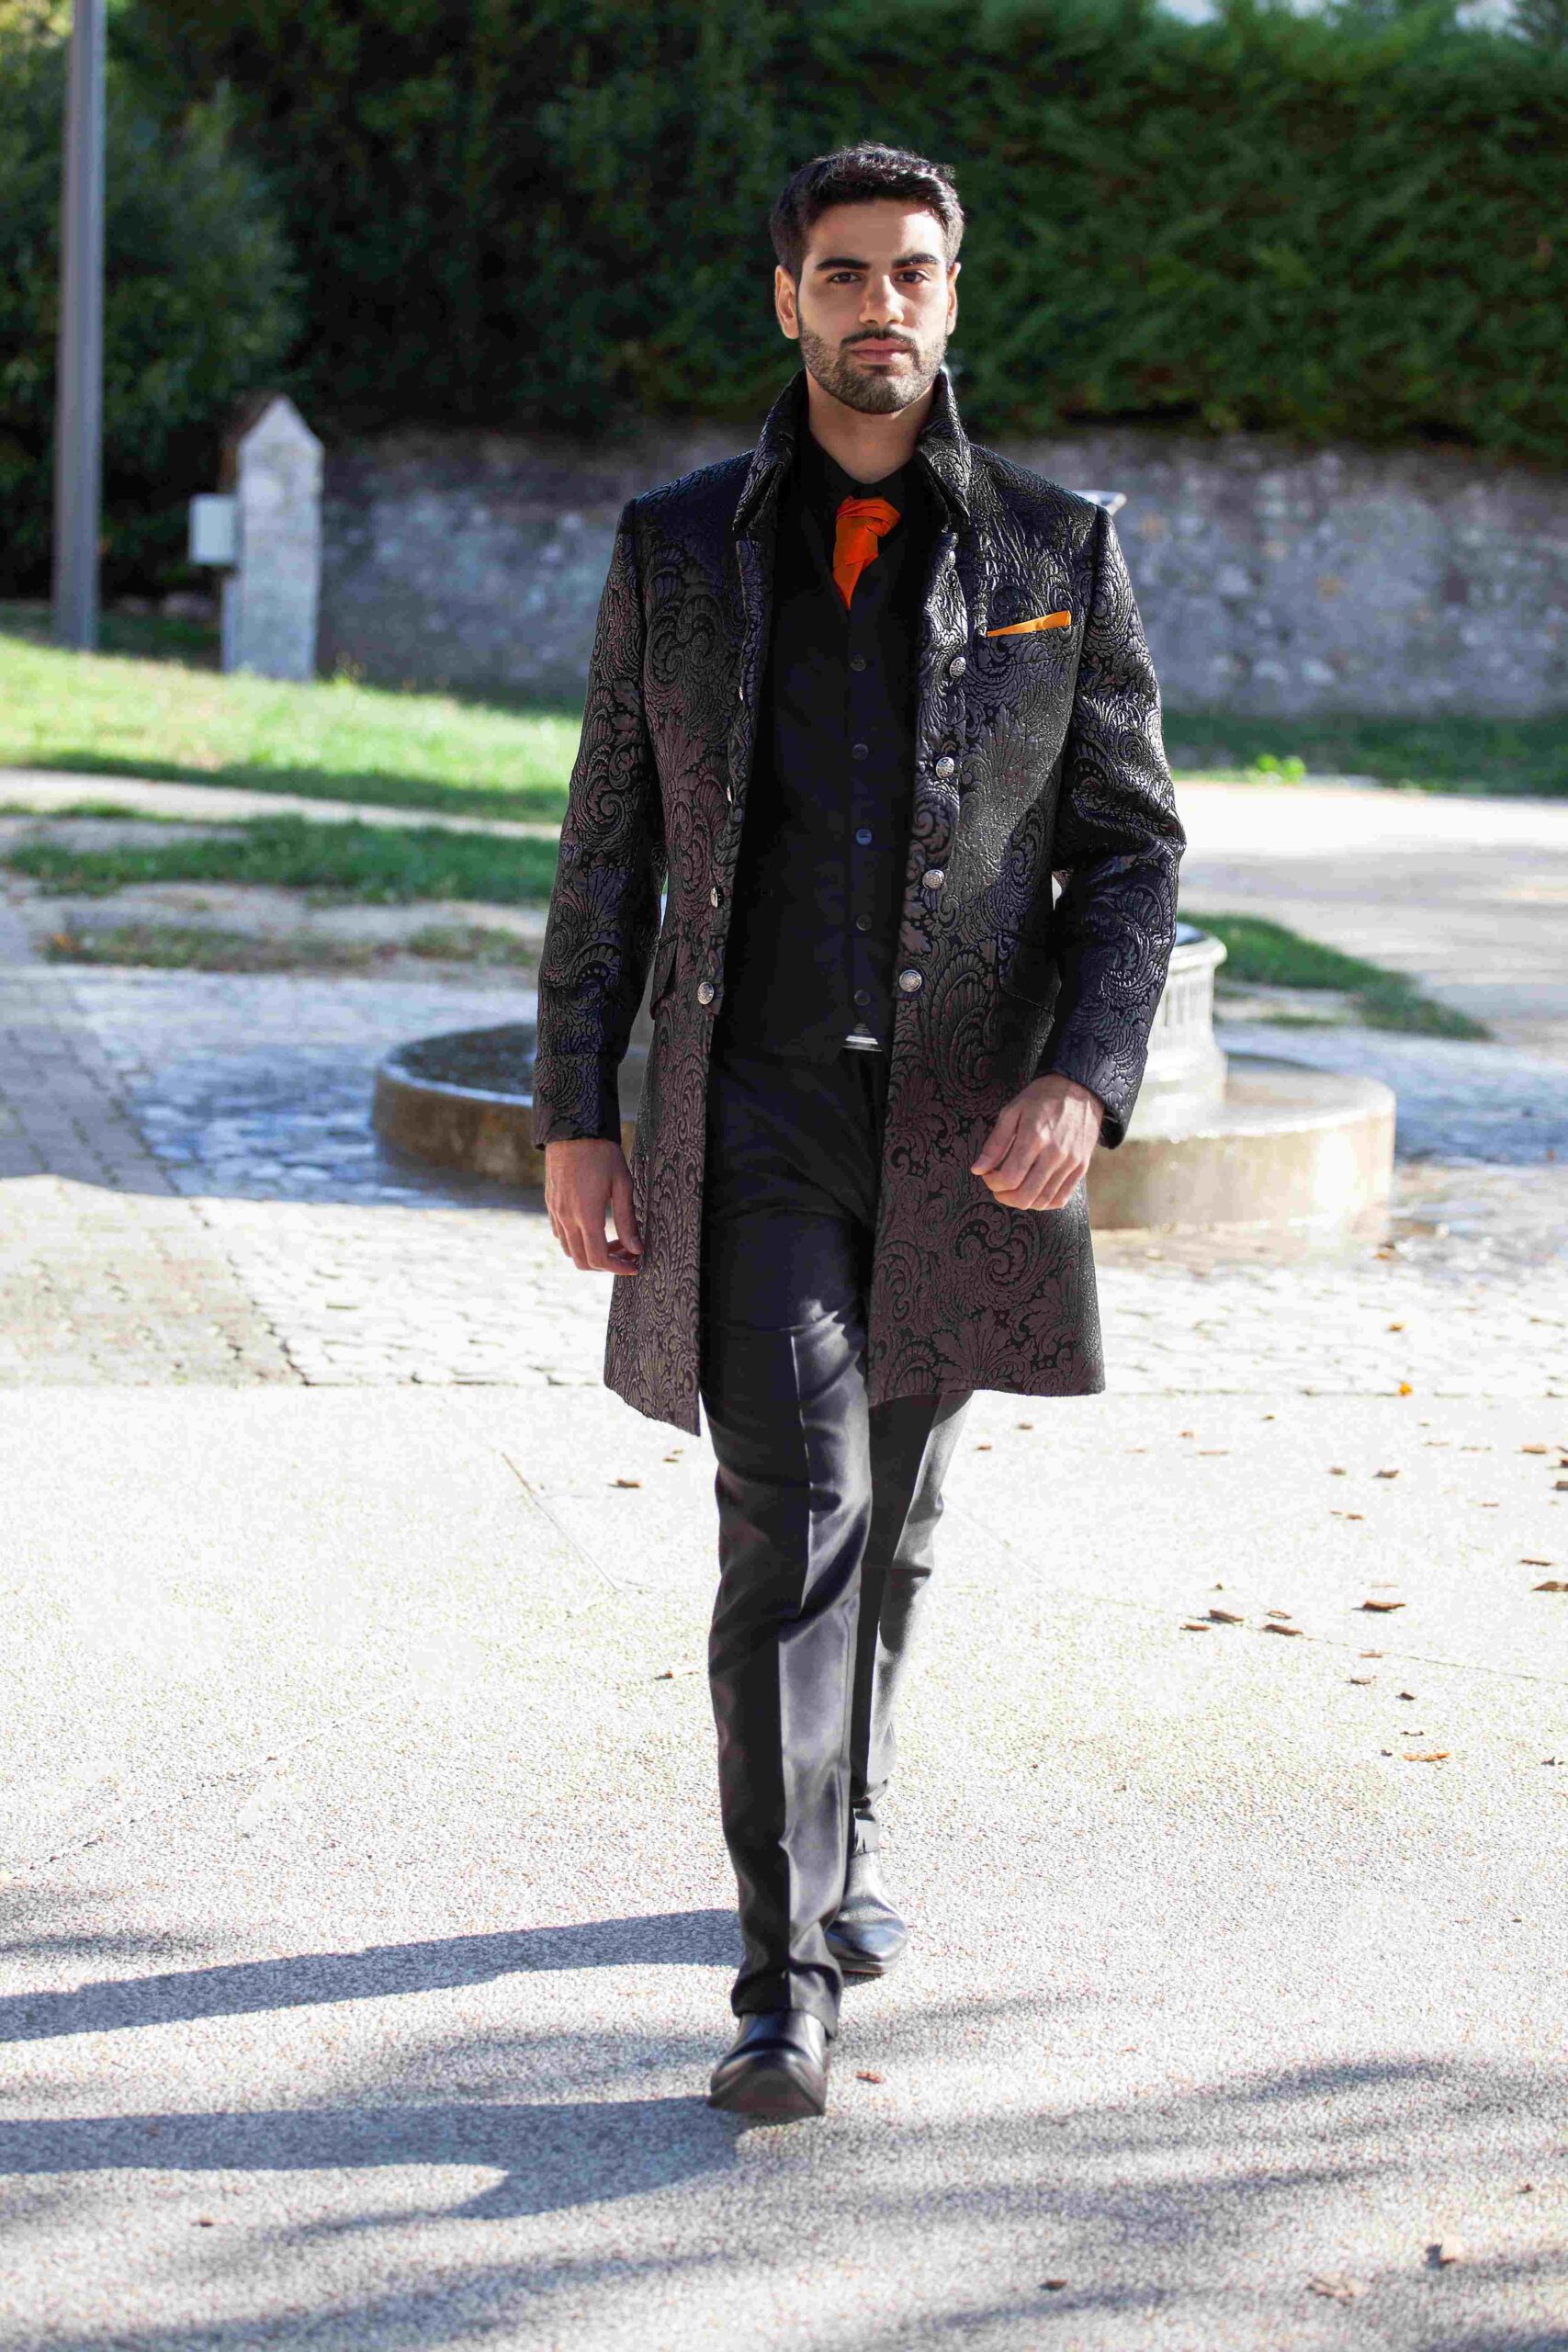 Costume Loyale costume de mariage grenoble couleur noir veste longue en jacquard lyonnais et lavallière orange